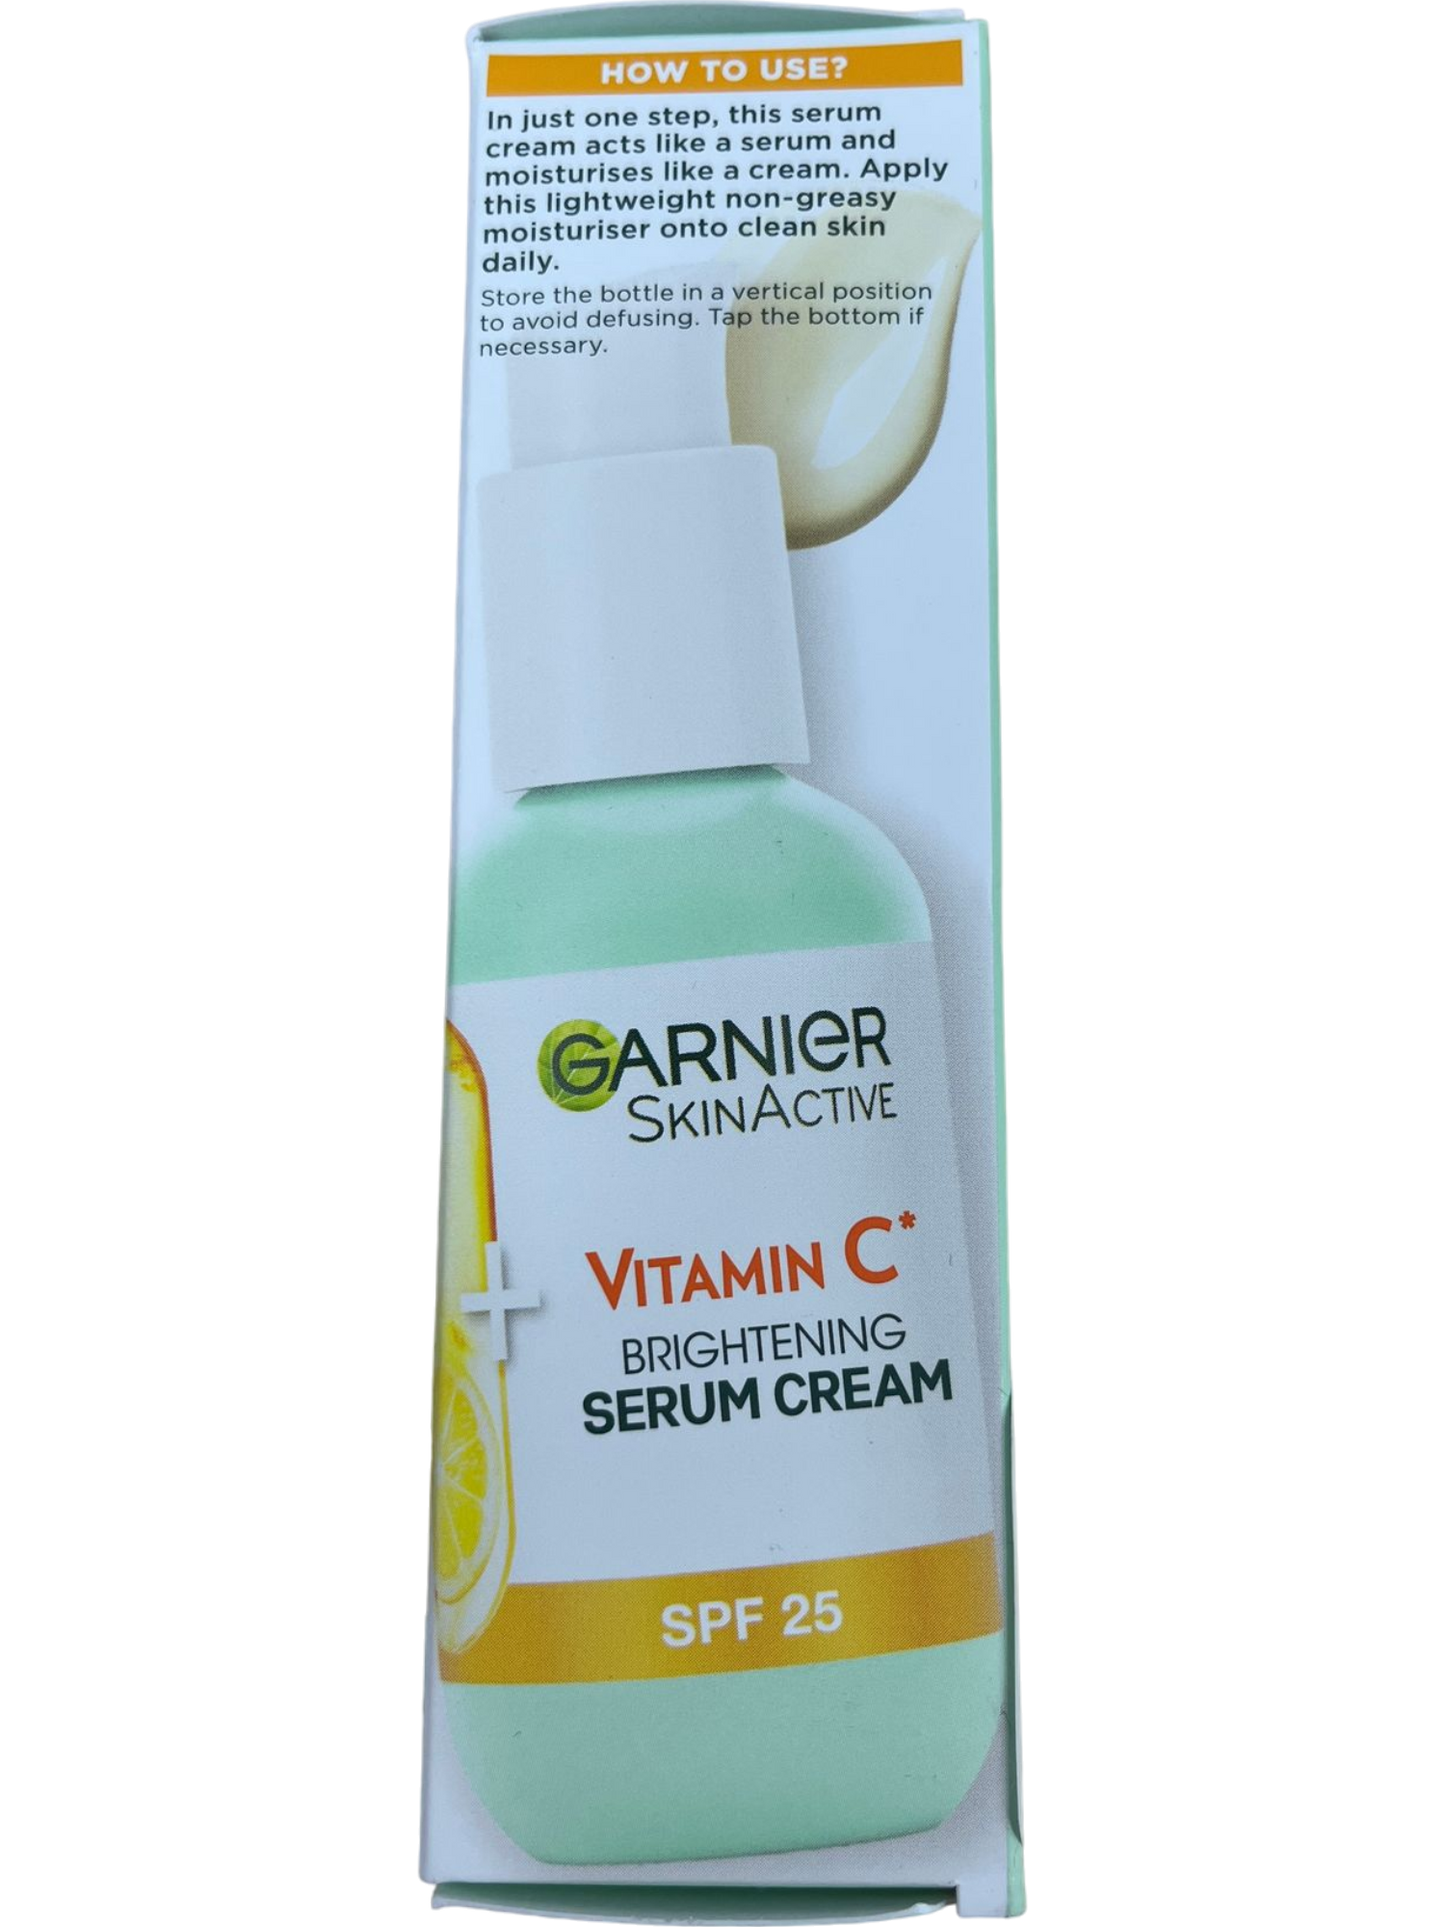 Garnier 2in1 Vitamin C Serum Cream with SPF 25 50ml